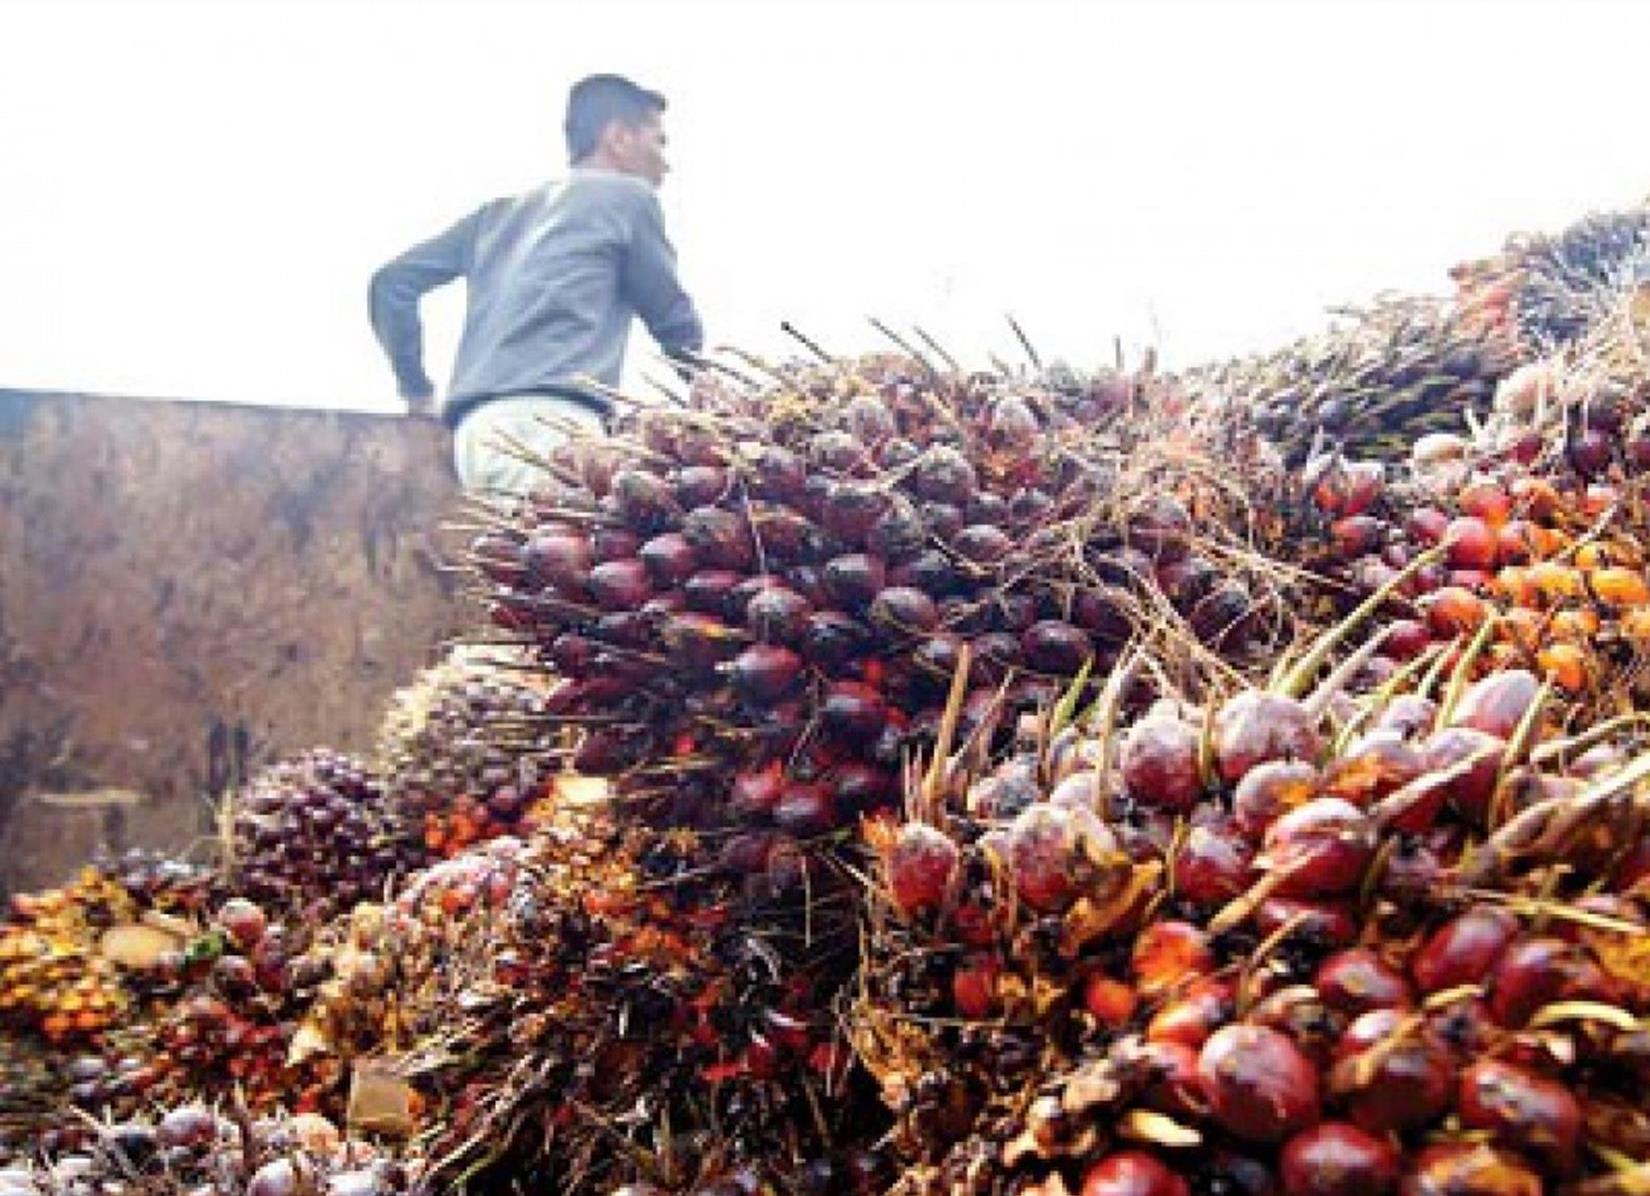 Harga Sawit di Sumatera Selatan Turun Lagi, Petani Bilang Begini